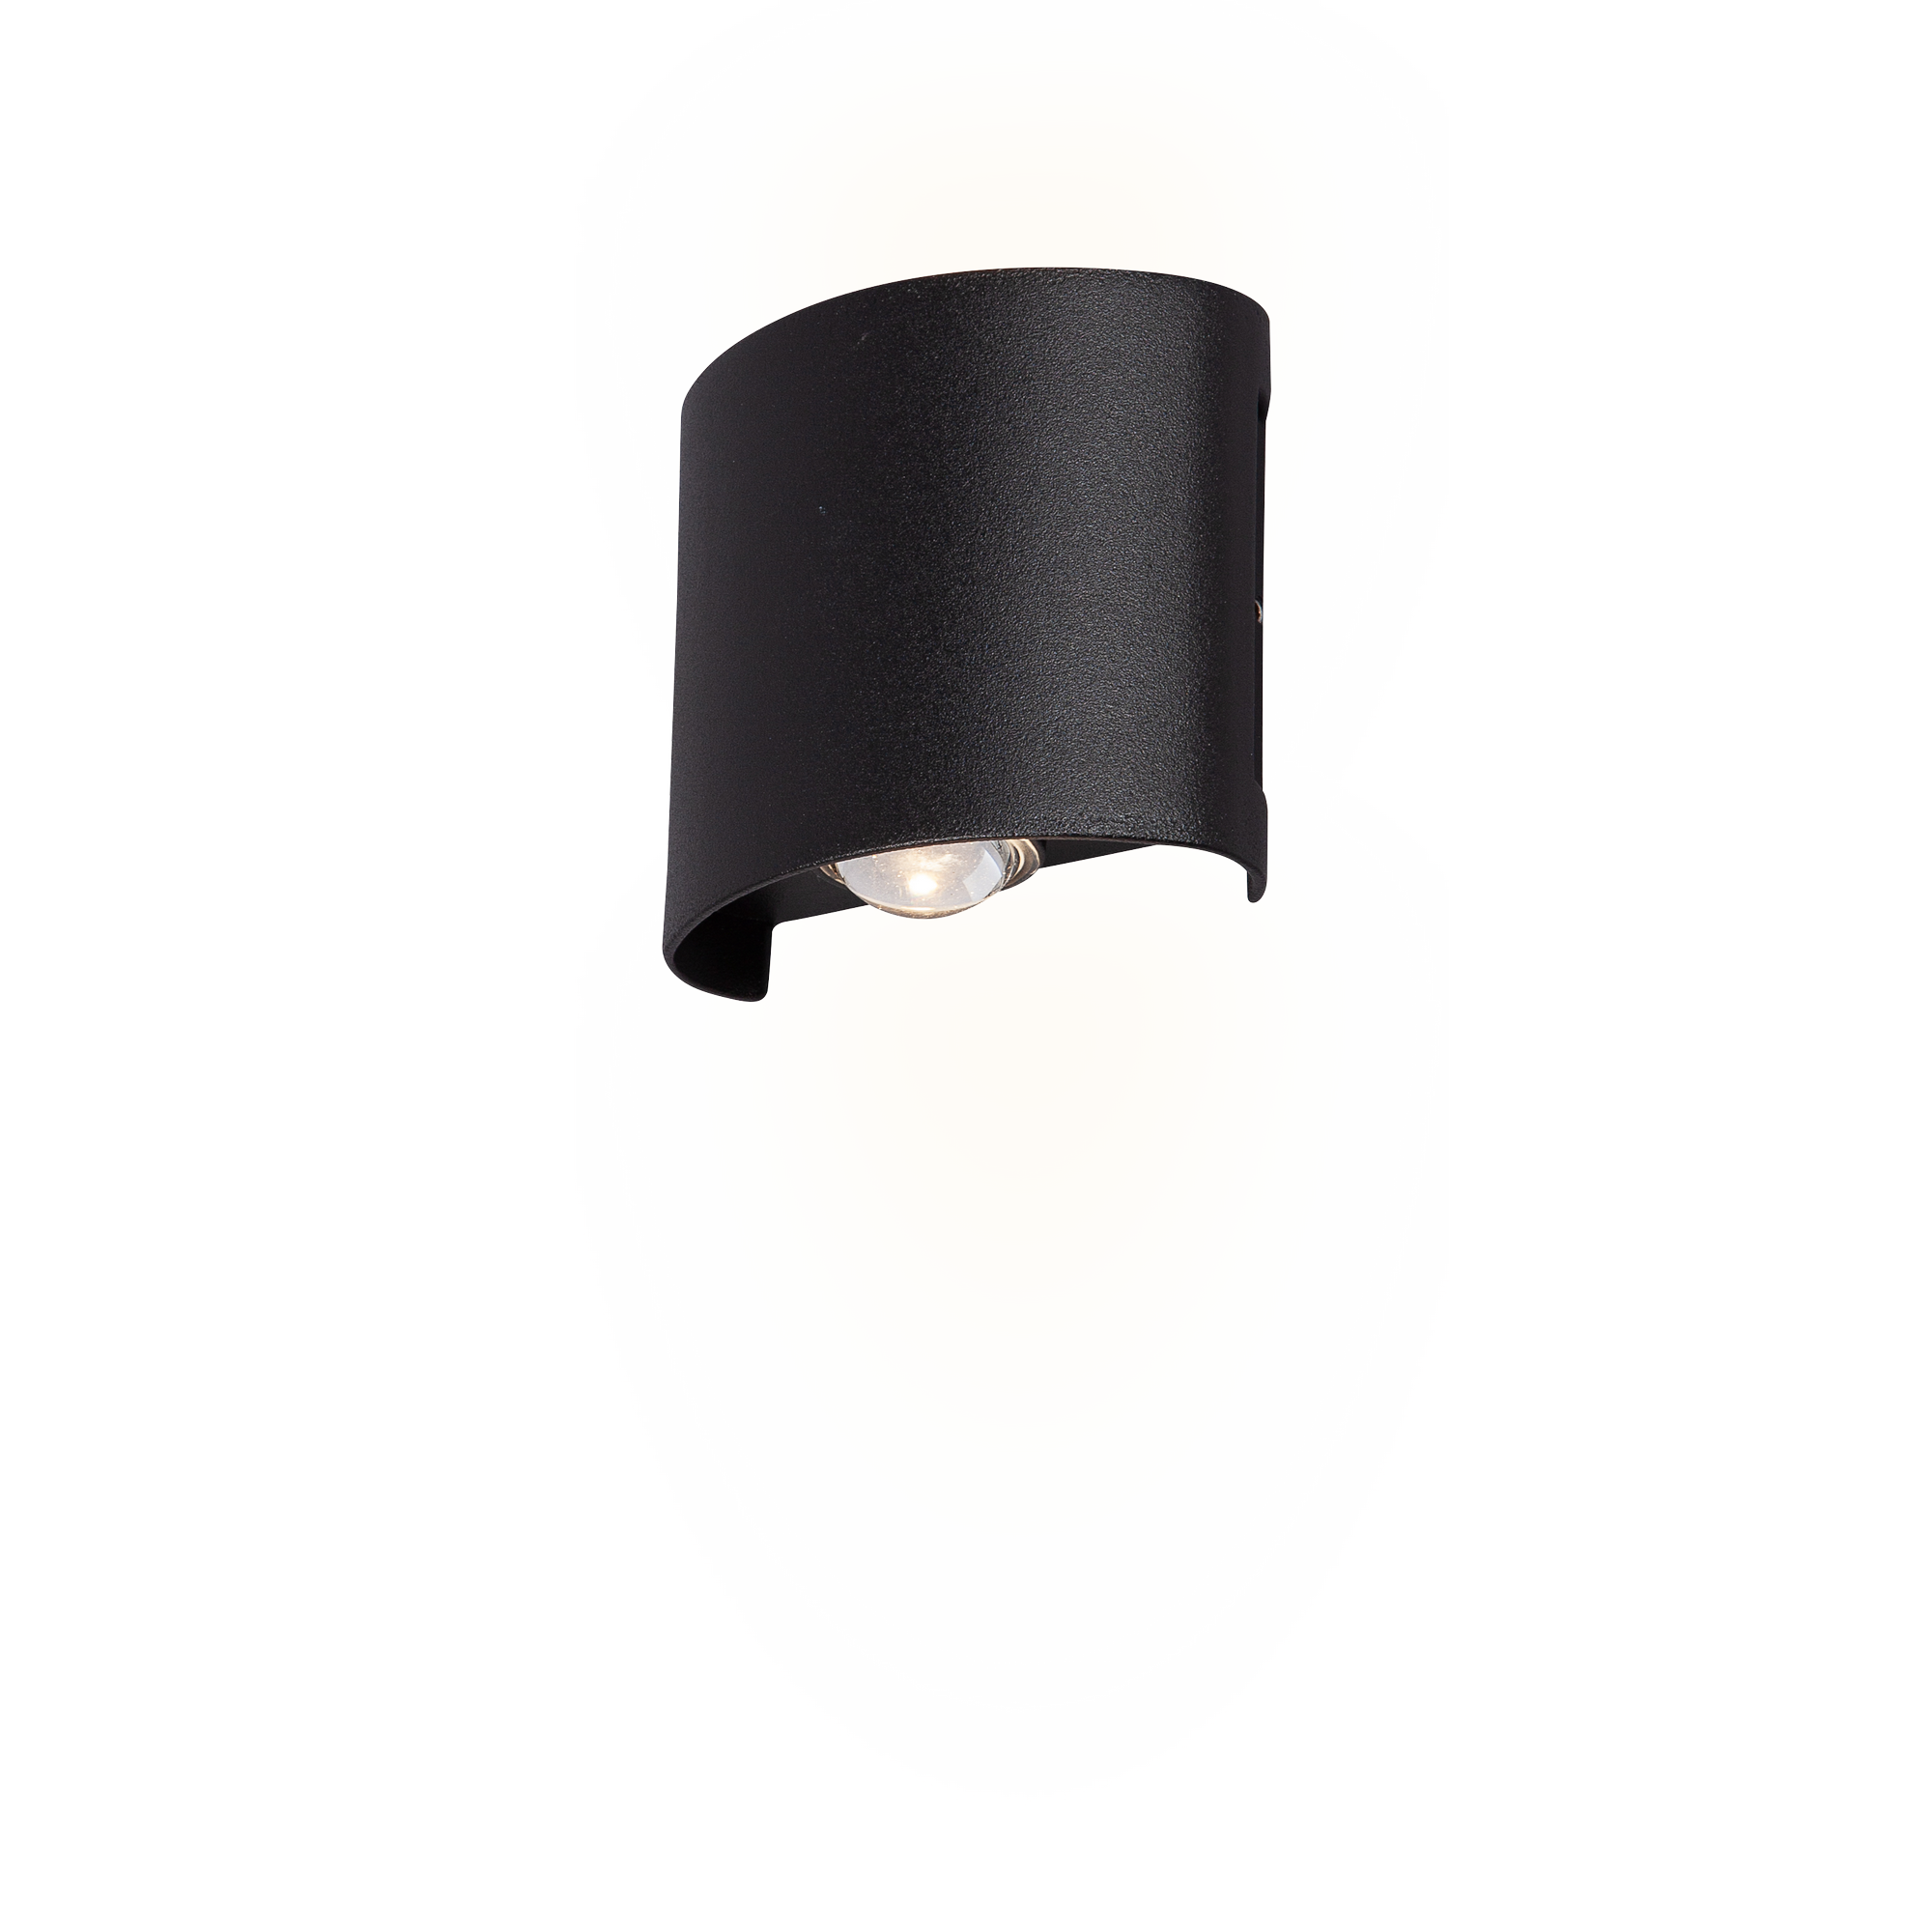 LED-Außenwandleuchte 'Toronto' schwarz halbrund 4 x 8,5 x 8 cm + product picture